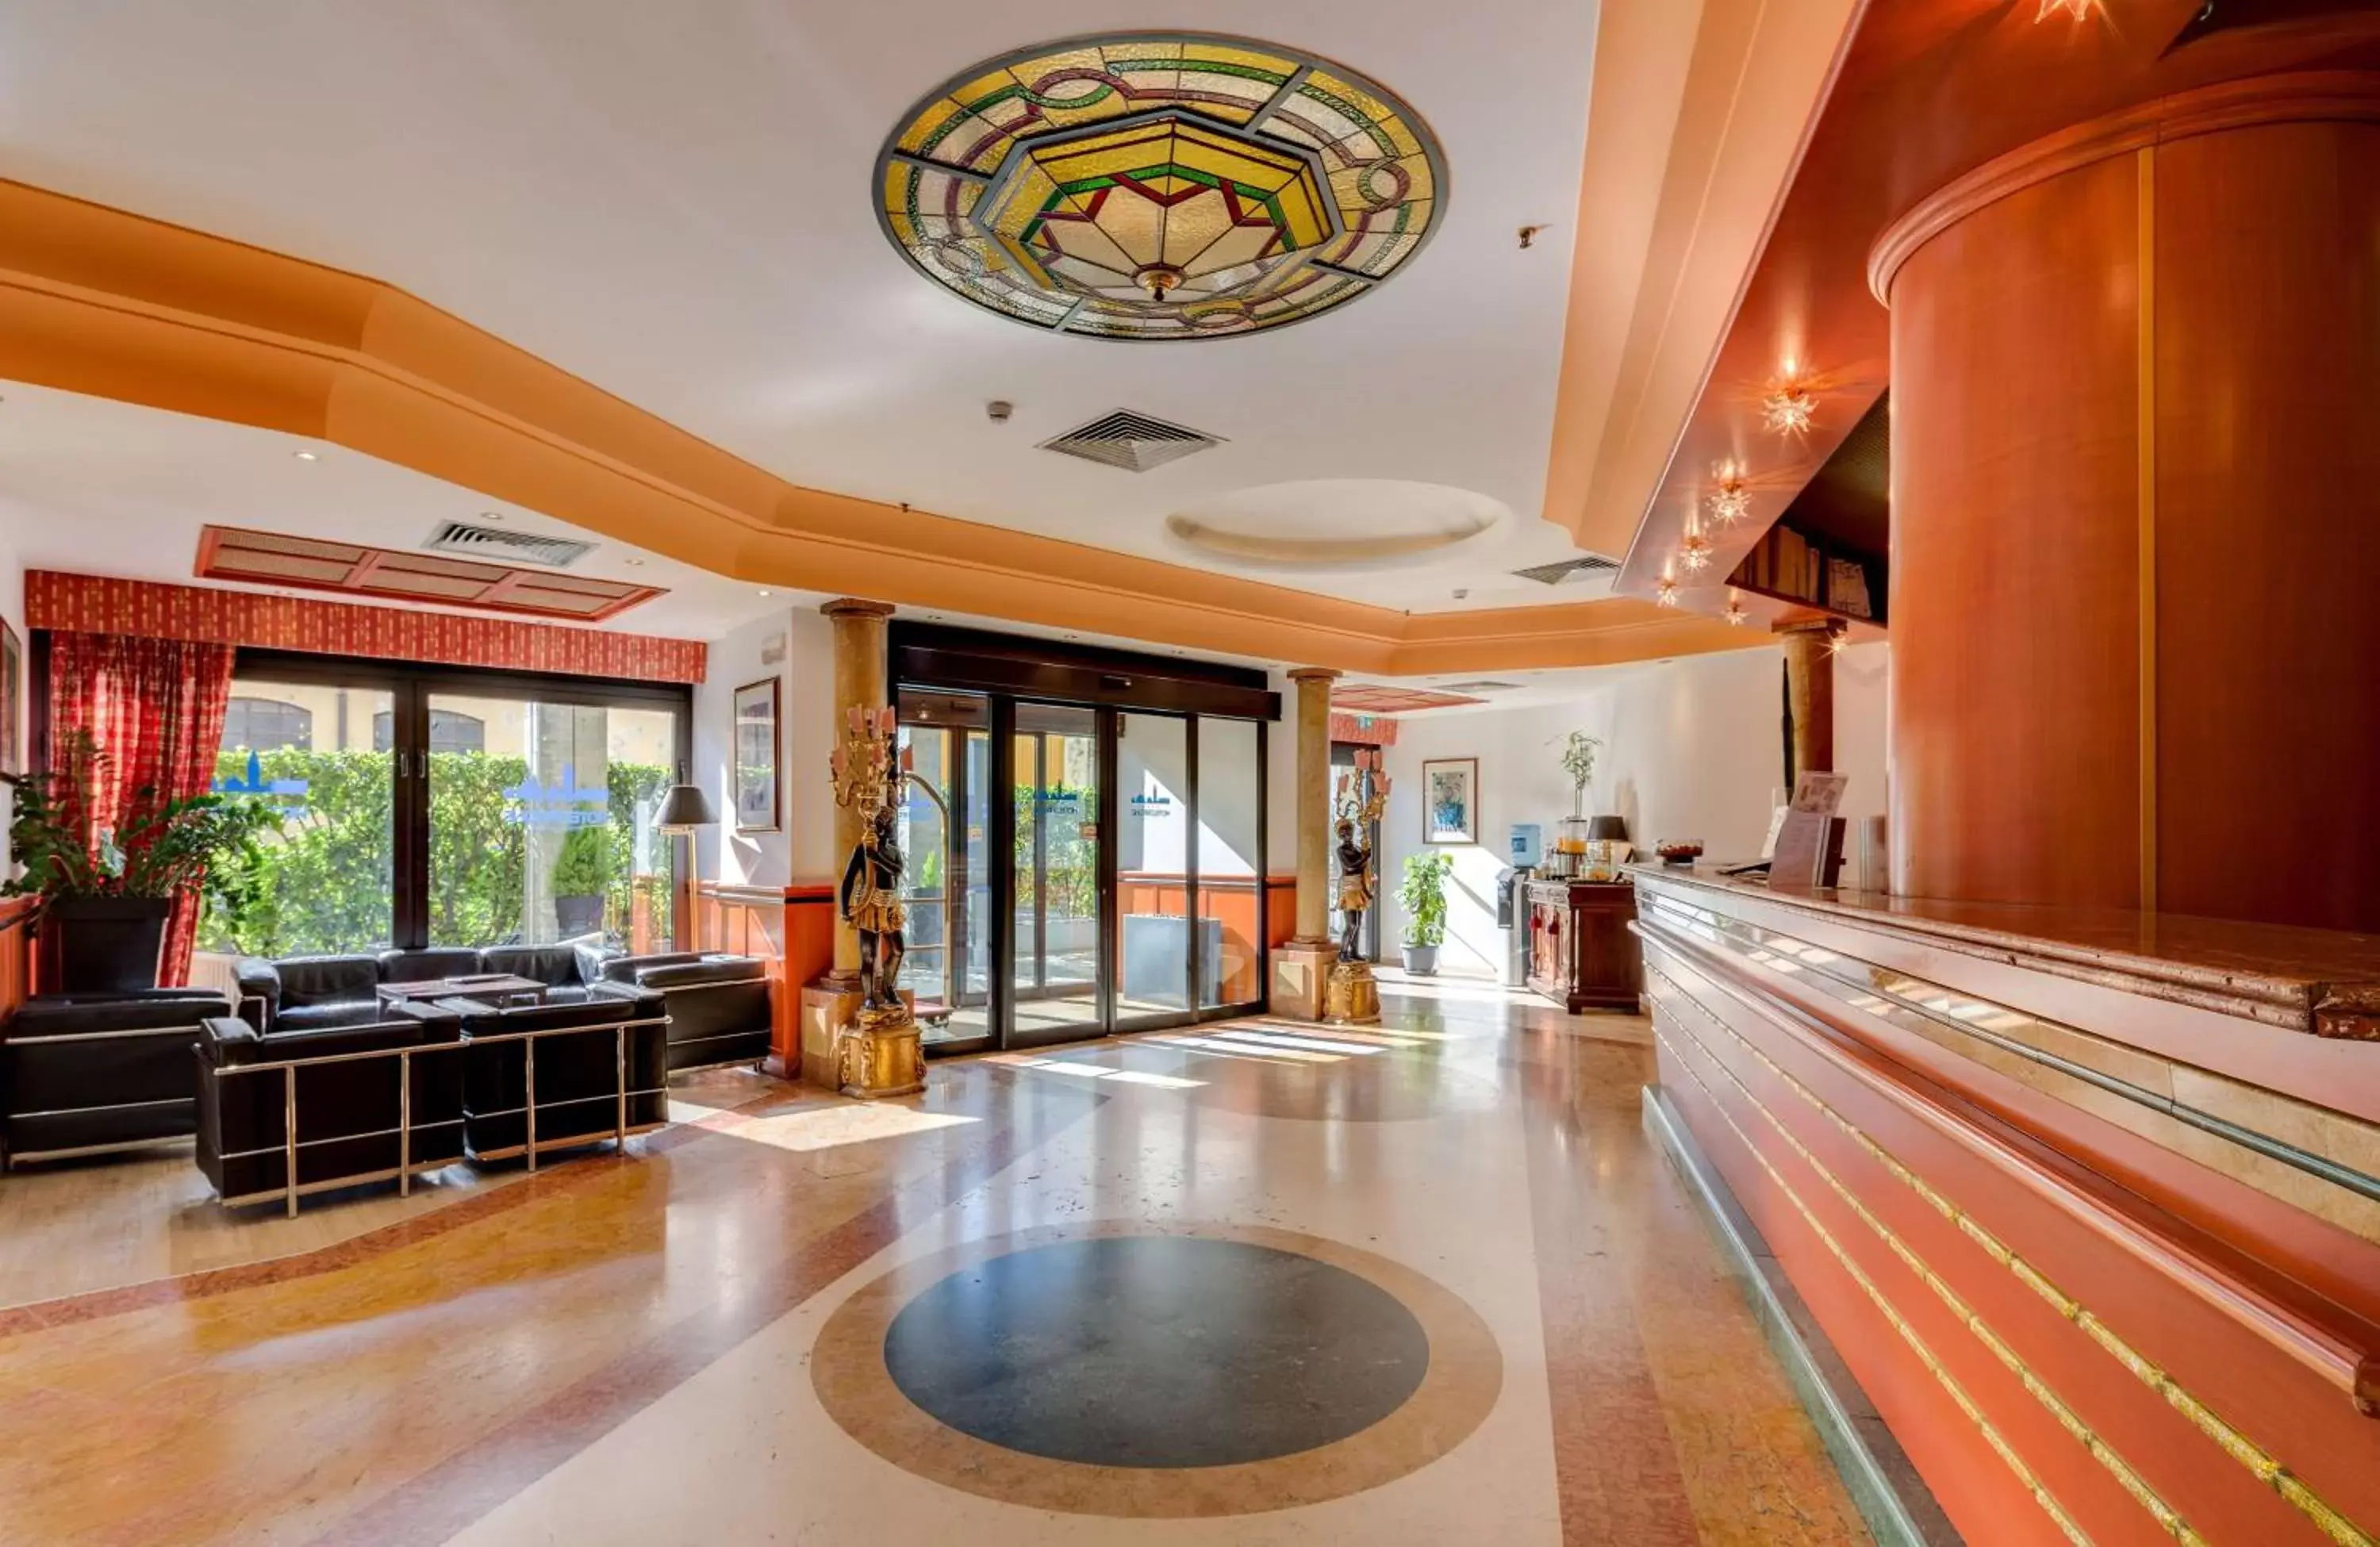 Lobby or reception, Lobby/Reception in Best Western Hotel Tritone